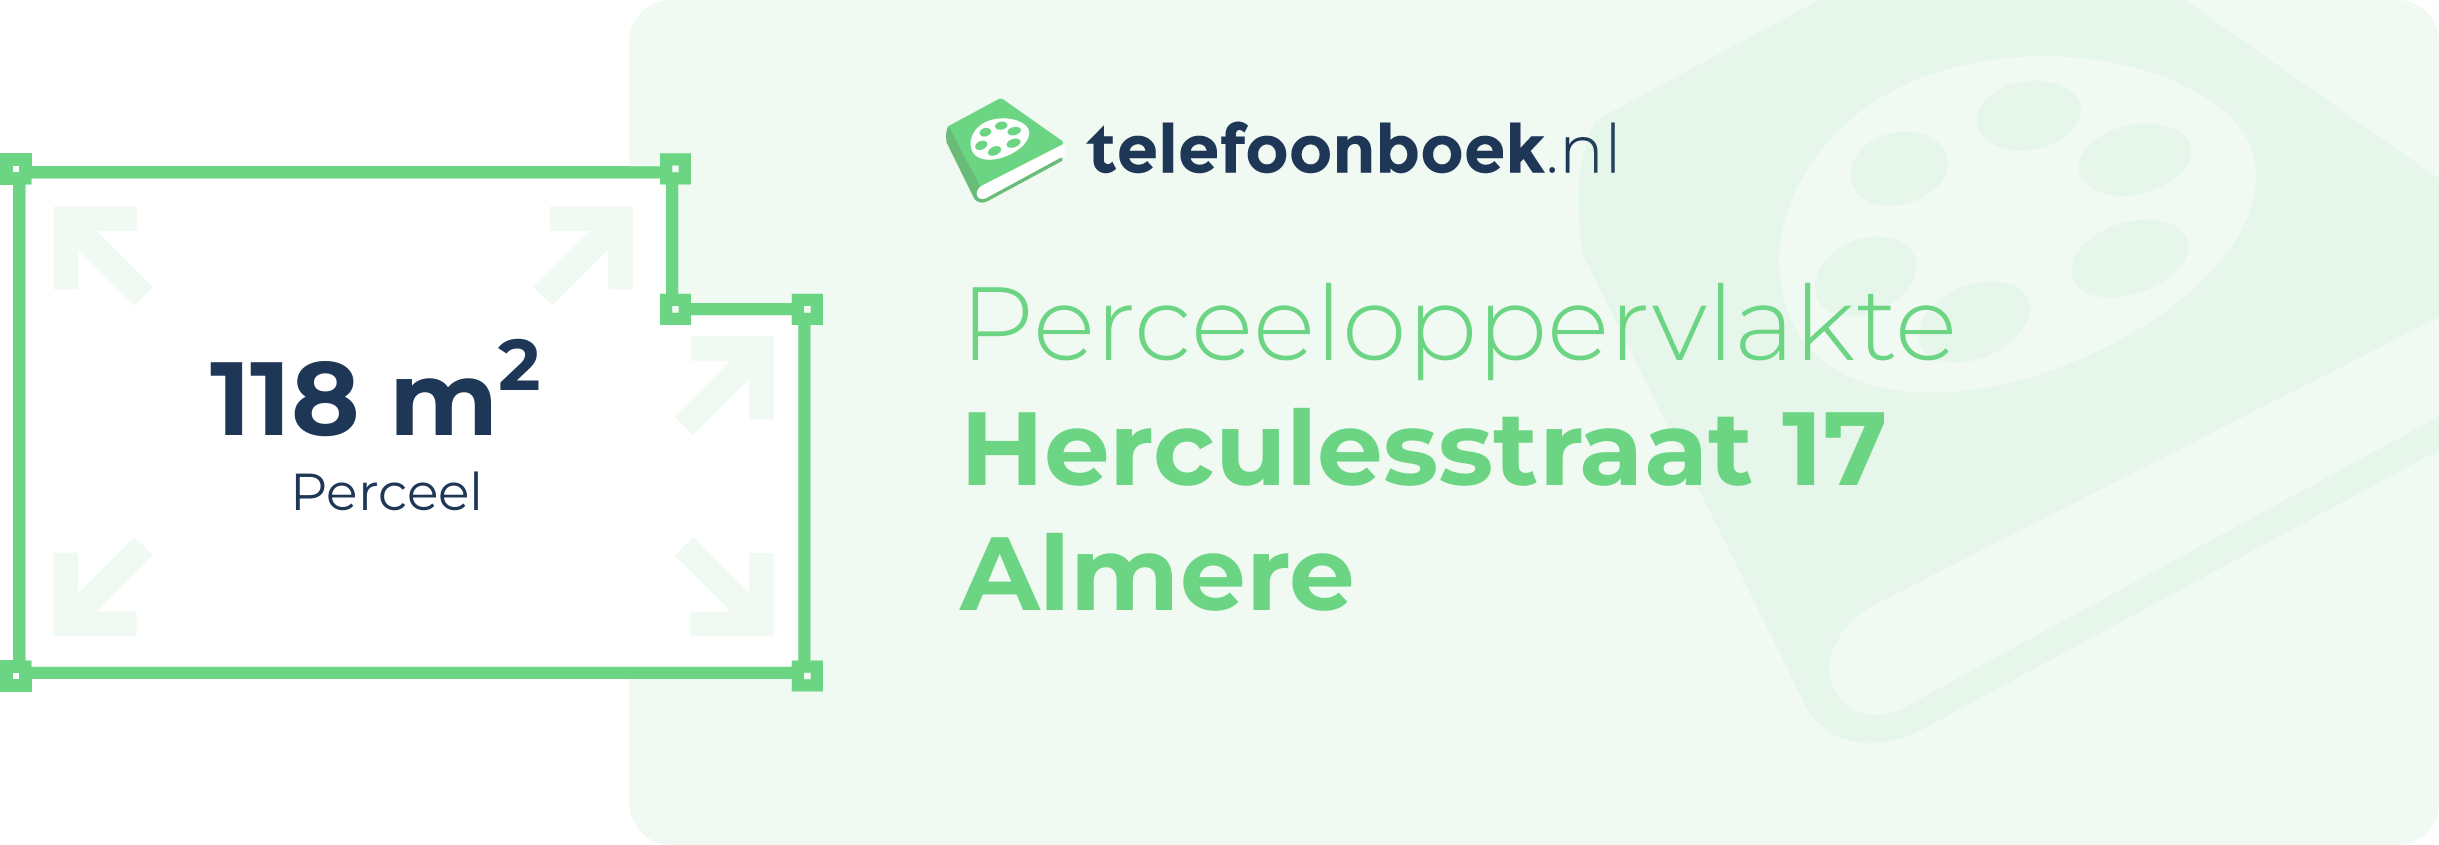 Perceeloppervlakte Herculesstraat 17 Almere